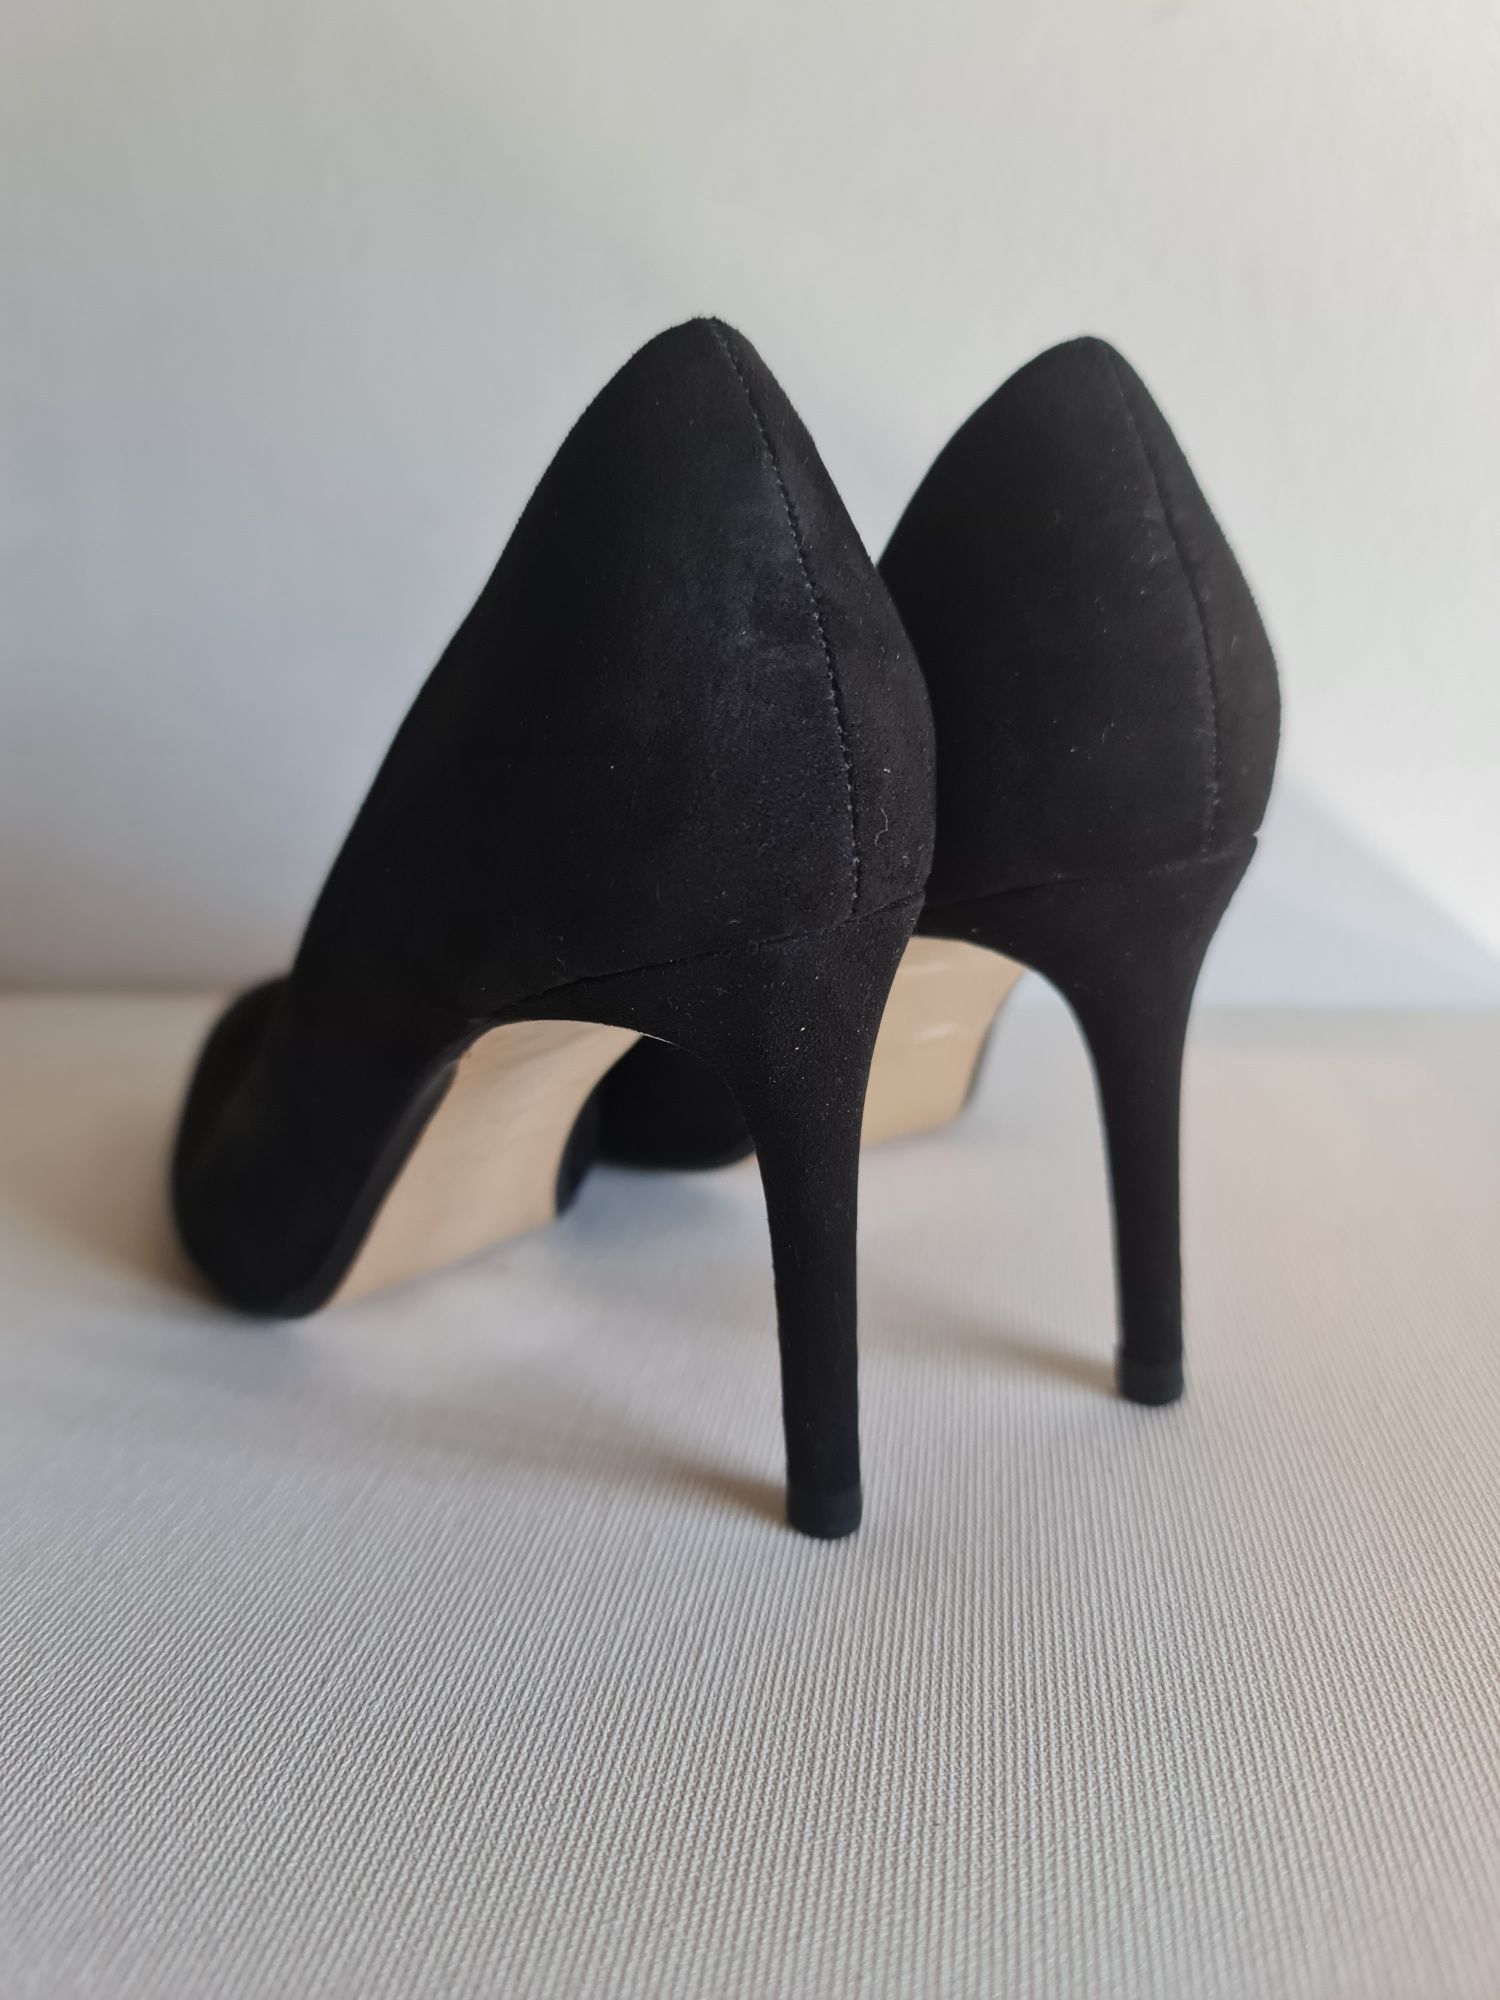 Pantofi cu toc, stiletto, Zara Basic, 38, piele întoarsă, negri, noi